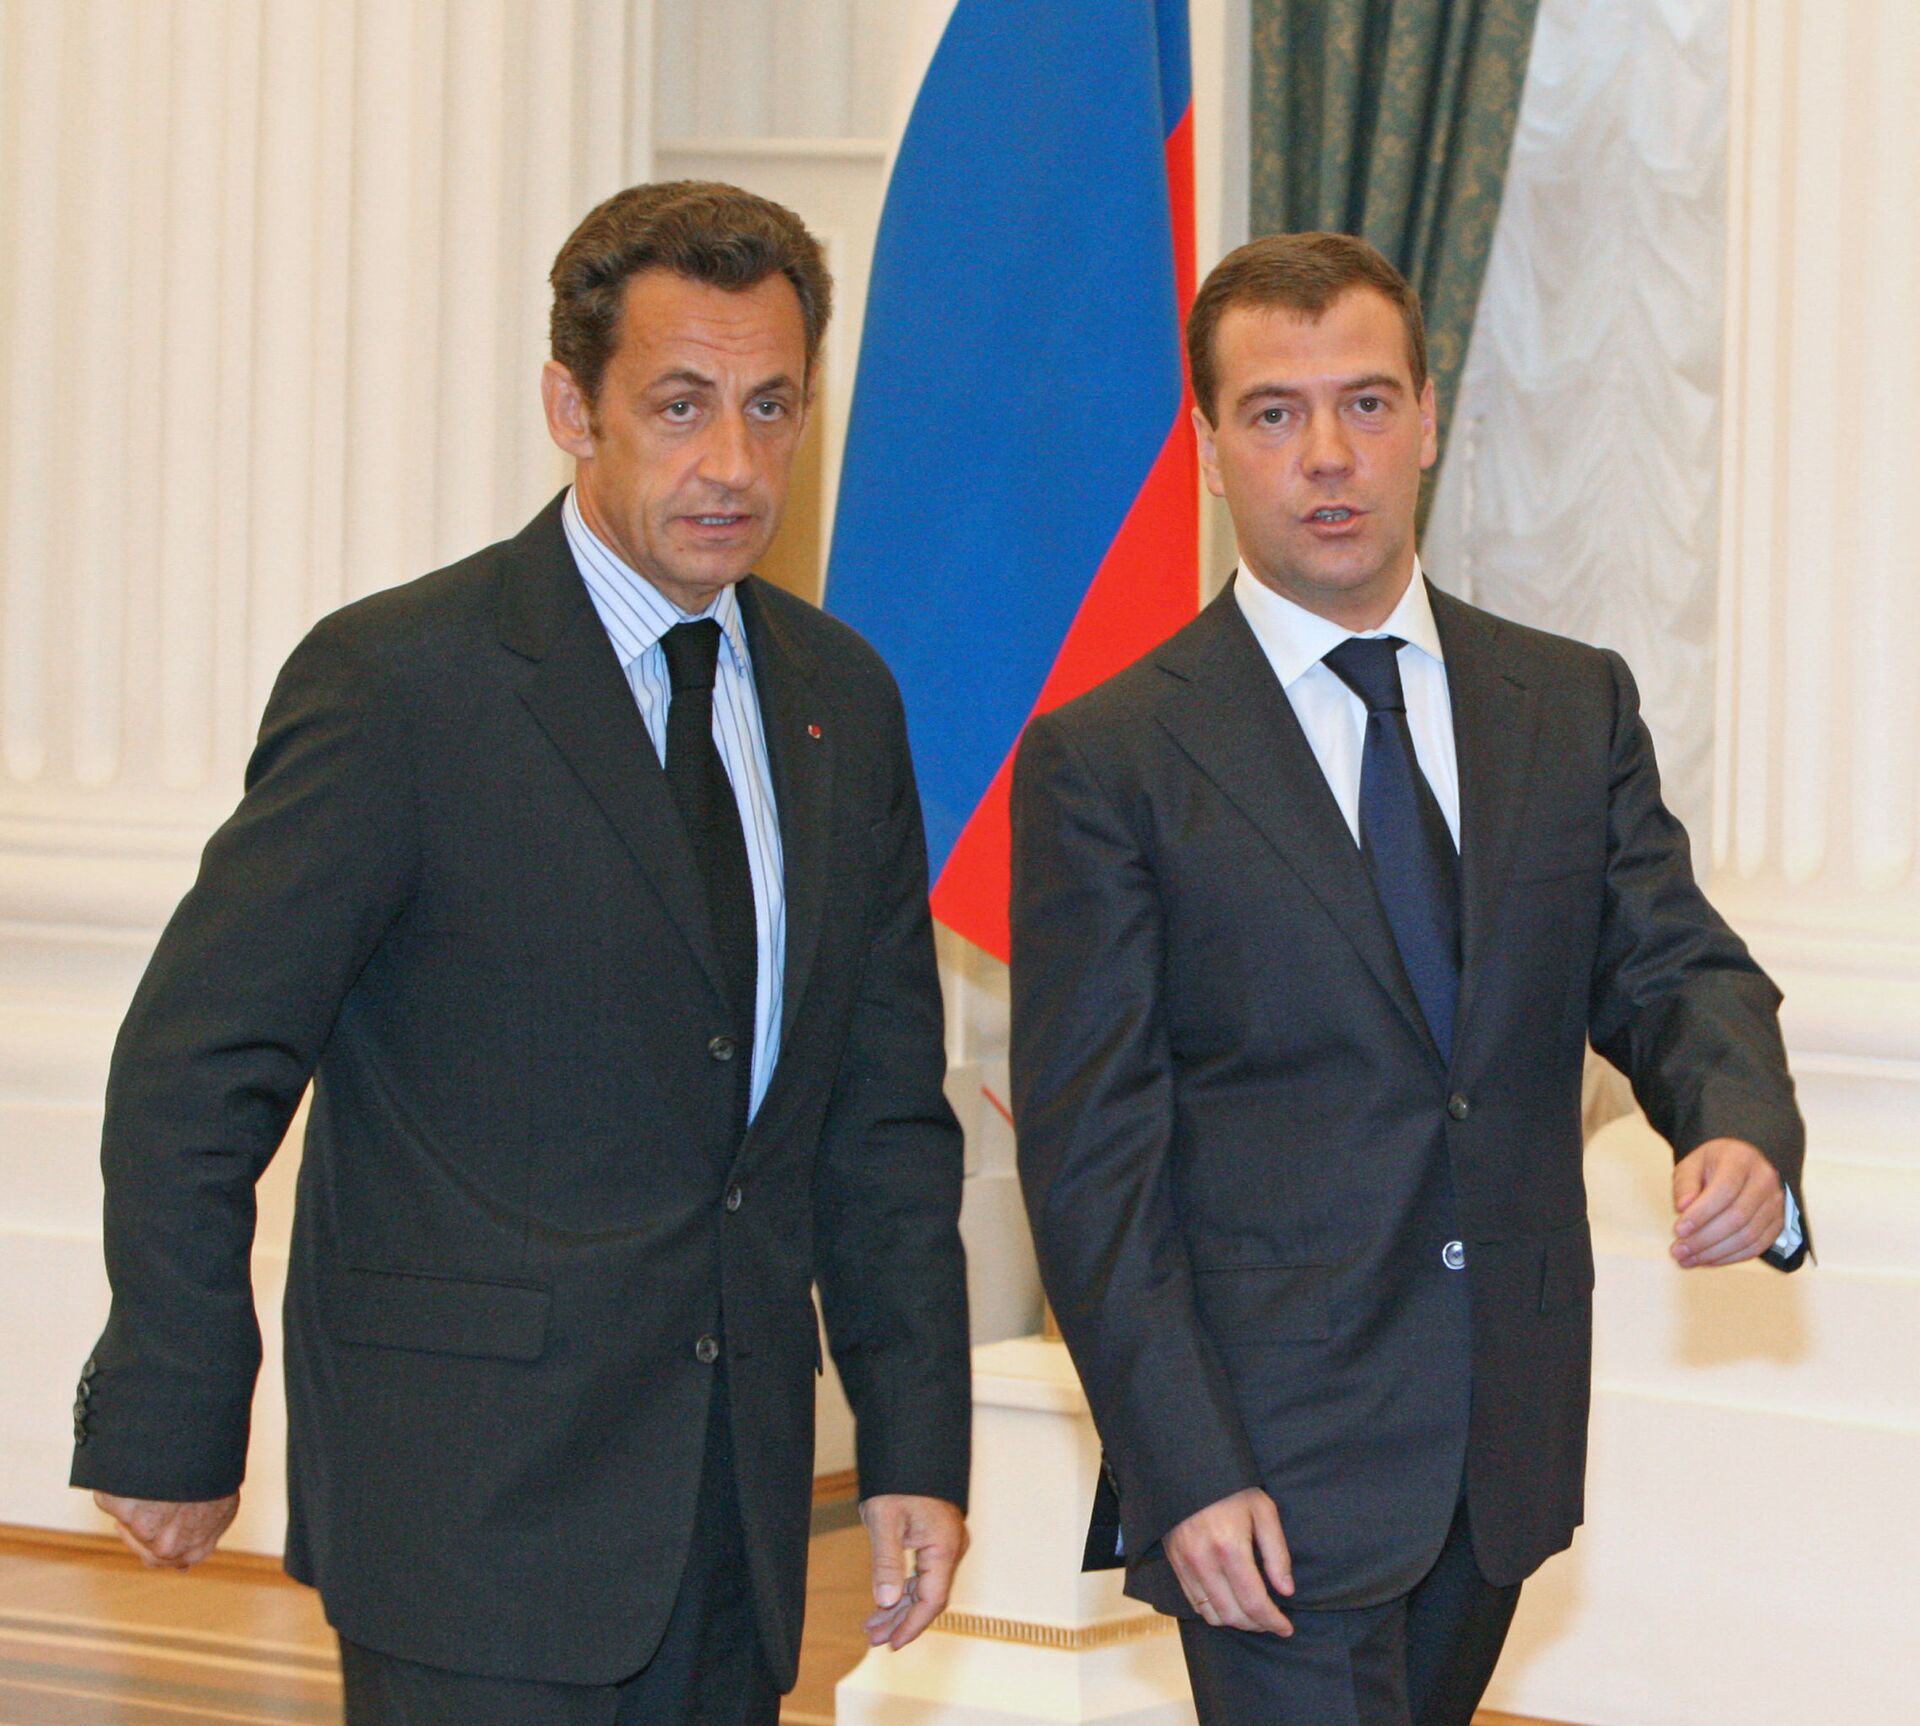 12 августа 2008. Президенты Франции и РФ Николя Саркози и Дмитрий Медведев (слева направо) перед началом совместной пресс-конференции по итогам переговоров об урегулировании конфликта в Южной Осетии. - Sputnik Абхазия, 1920, 12.10.2021